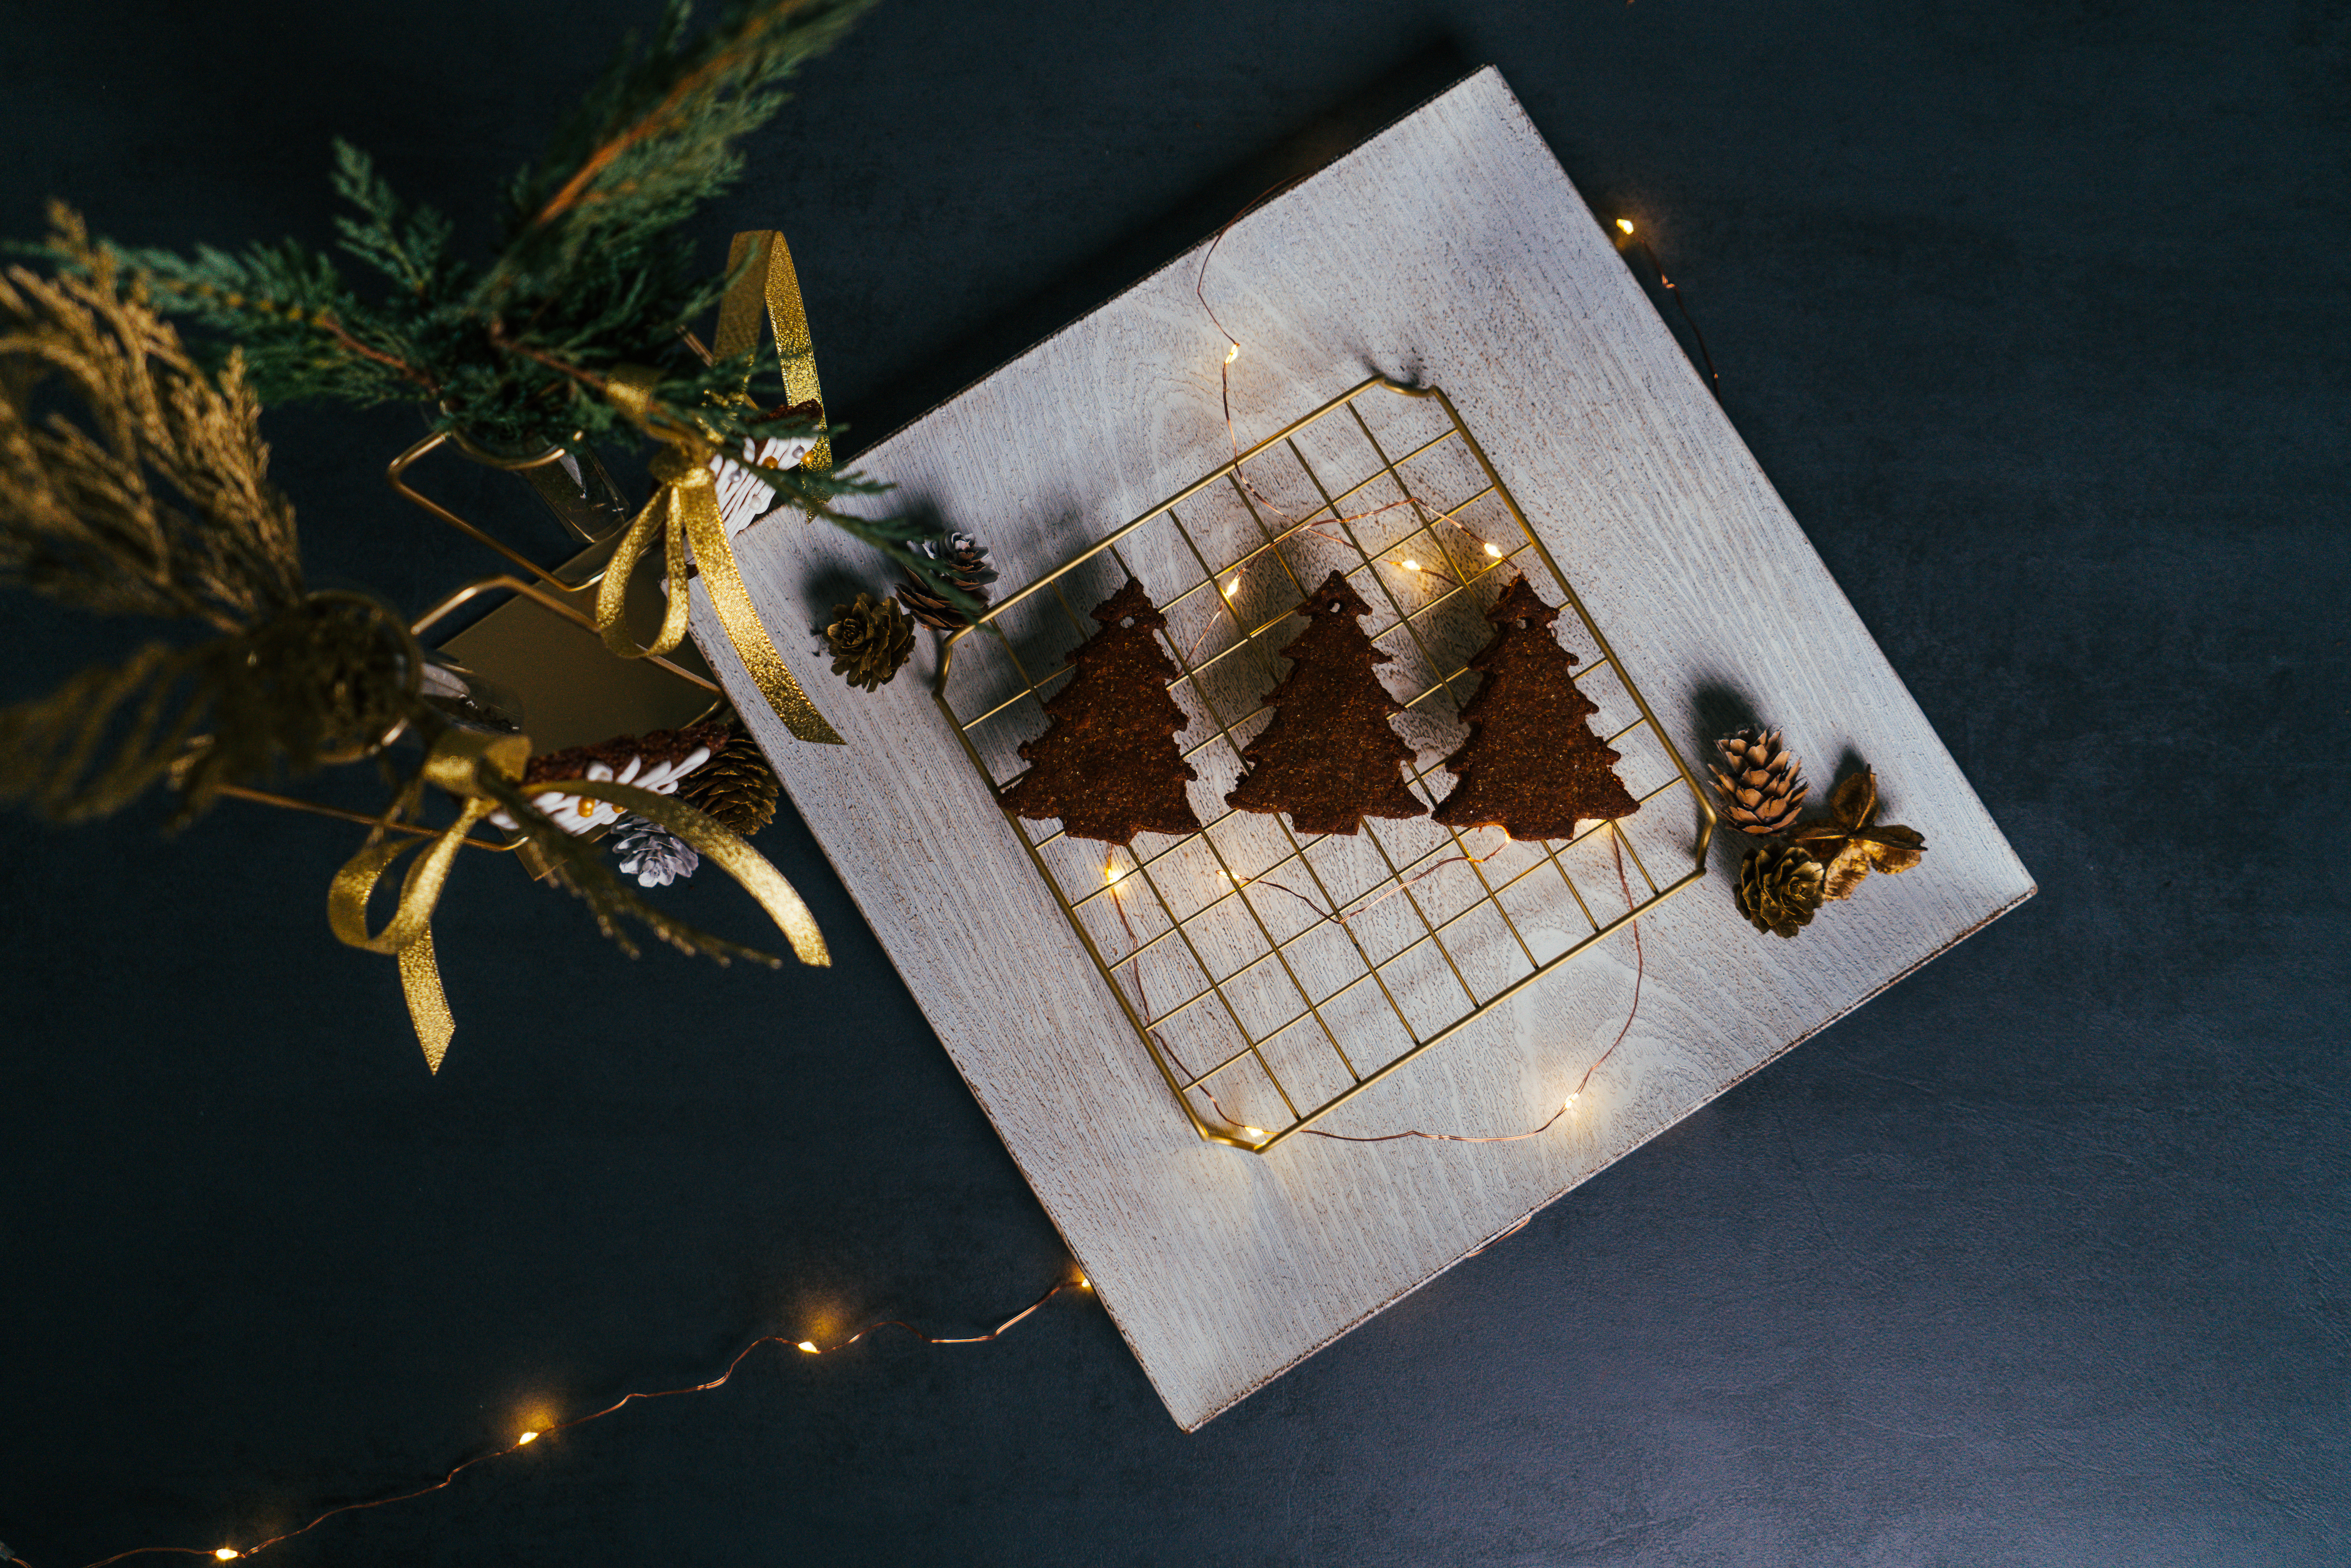 decoracion navideña casera con galletas de navidad en forma de árboles de navidad, galletas de jengibre caseras originales 